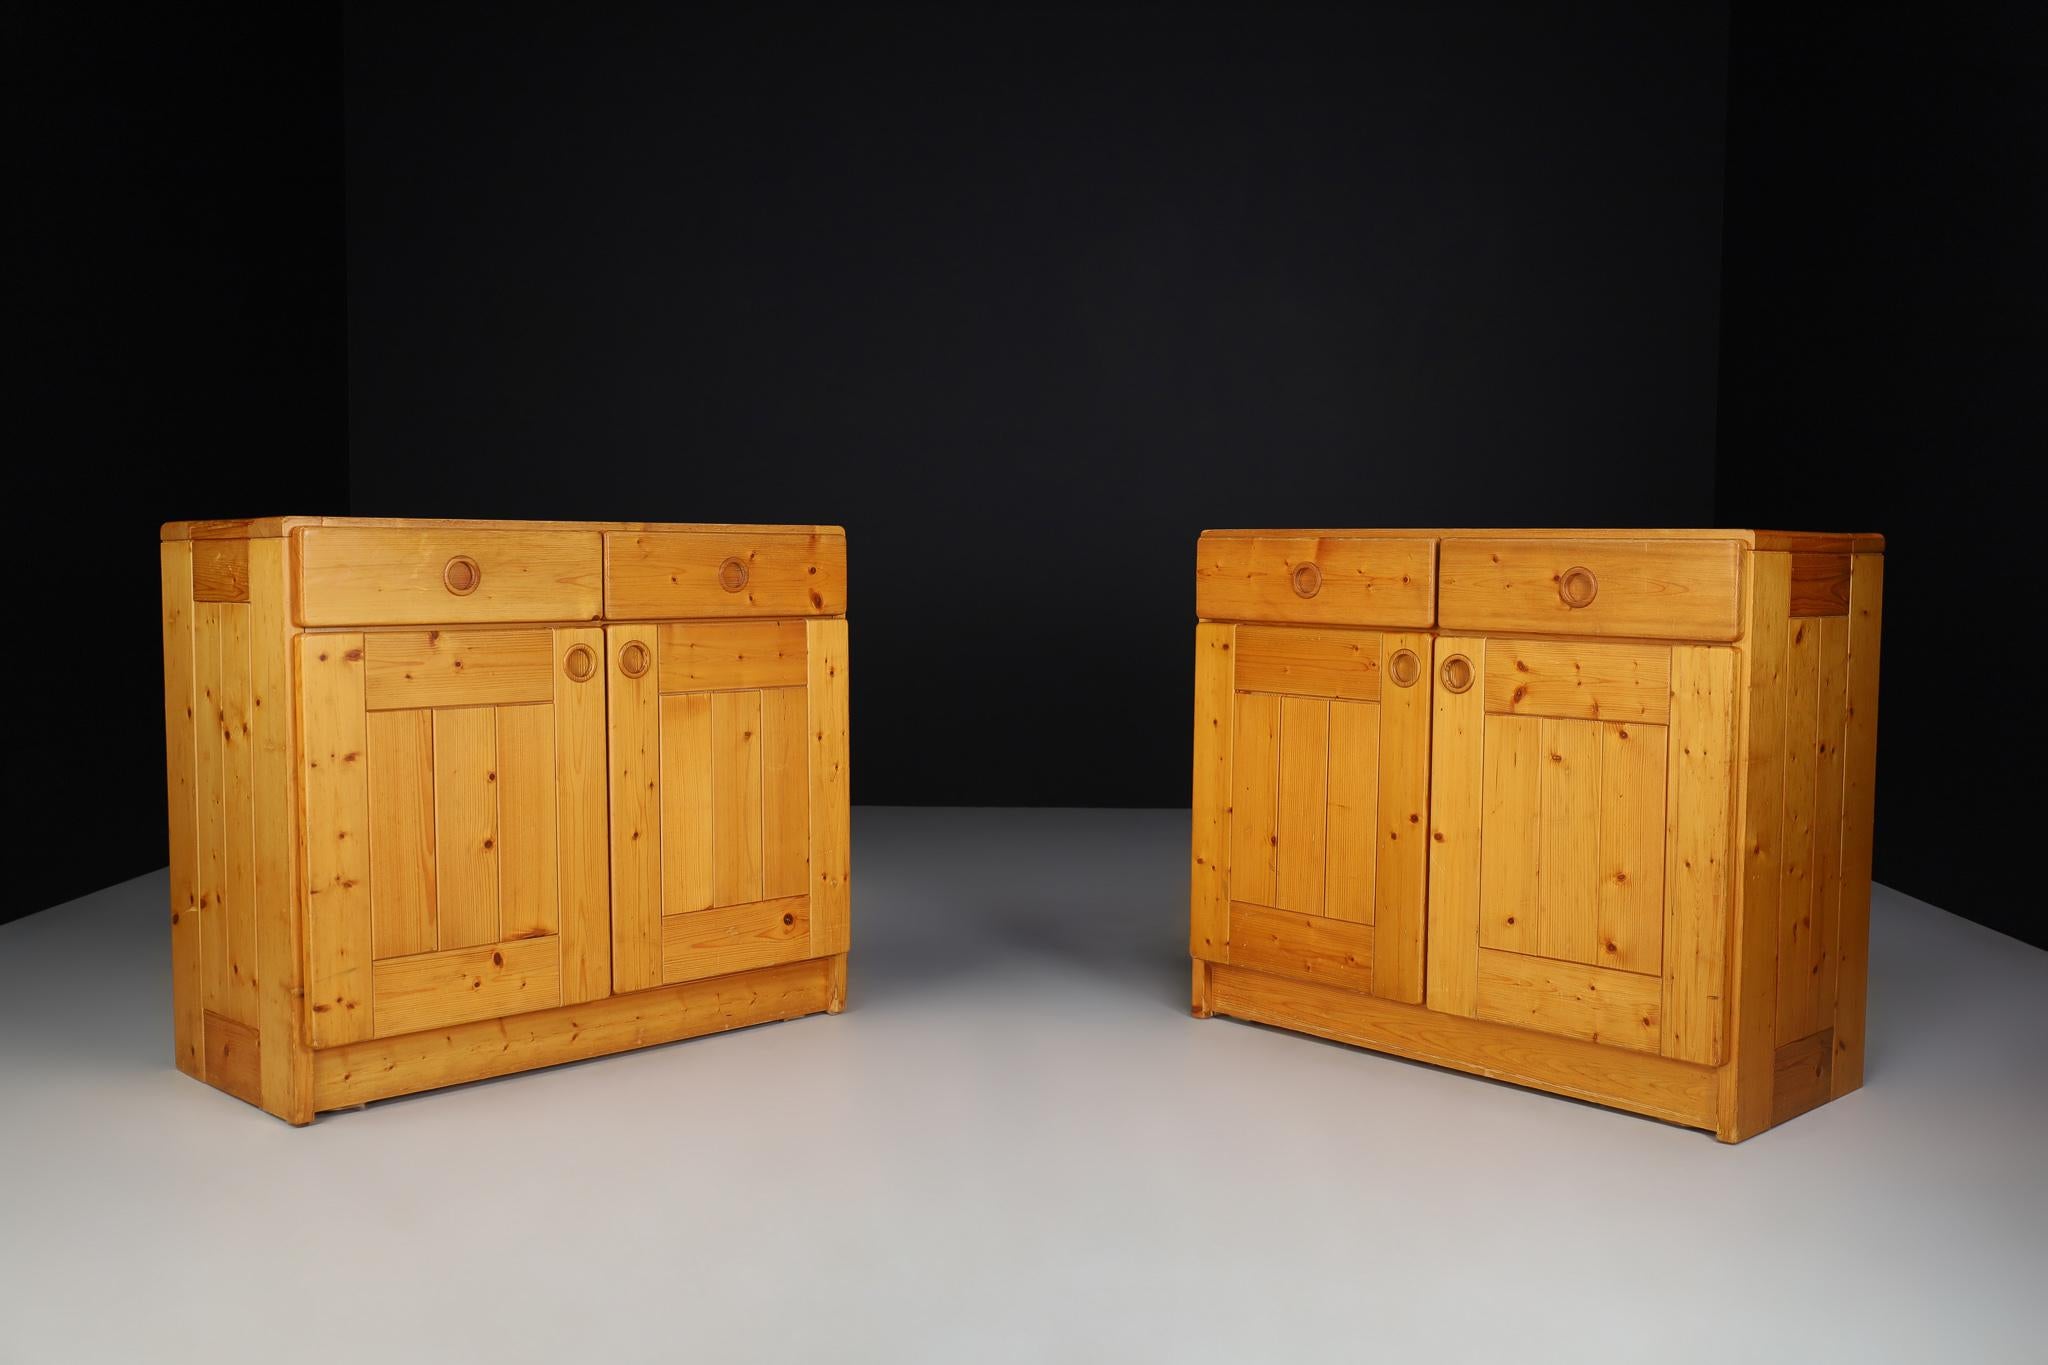 Cabinet/armoire moderne du milieu du siècle dernier par Charlotte Perriand pour Les Arcs. Avec deux tiroirs coulissants. Les portes s'ouvrent sur une étagère avec deux espaces de rangement. Elle est fabriquée en pin dans les années 1970 - bon état